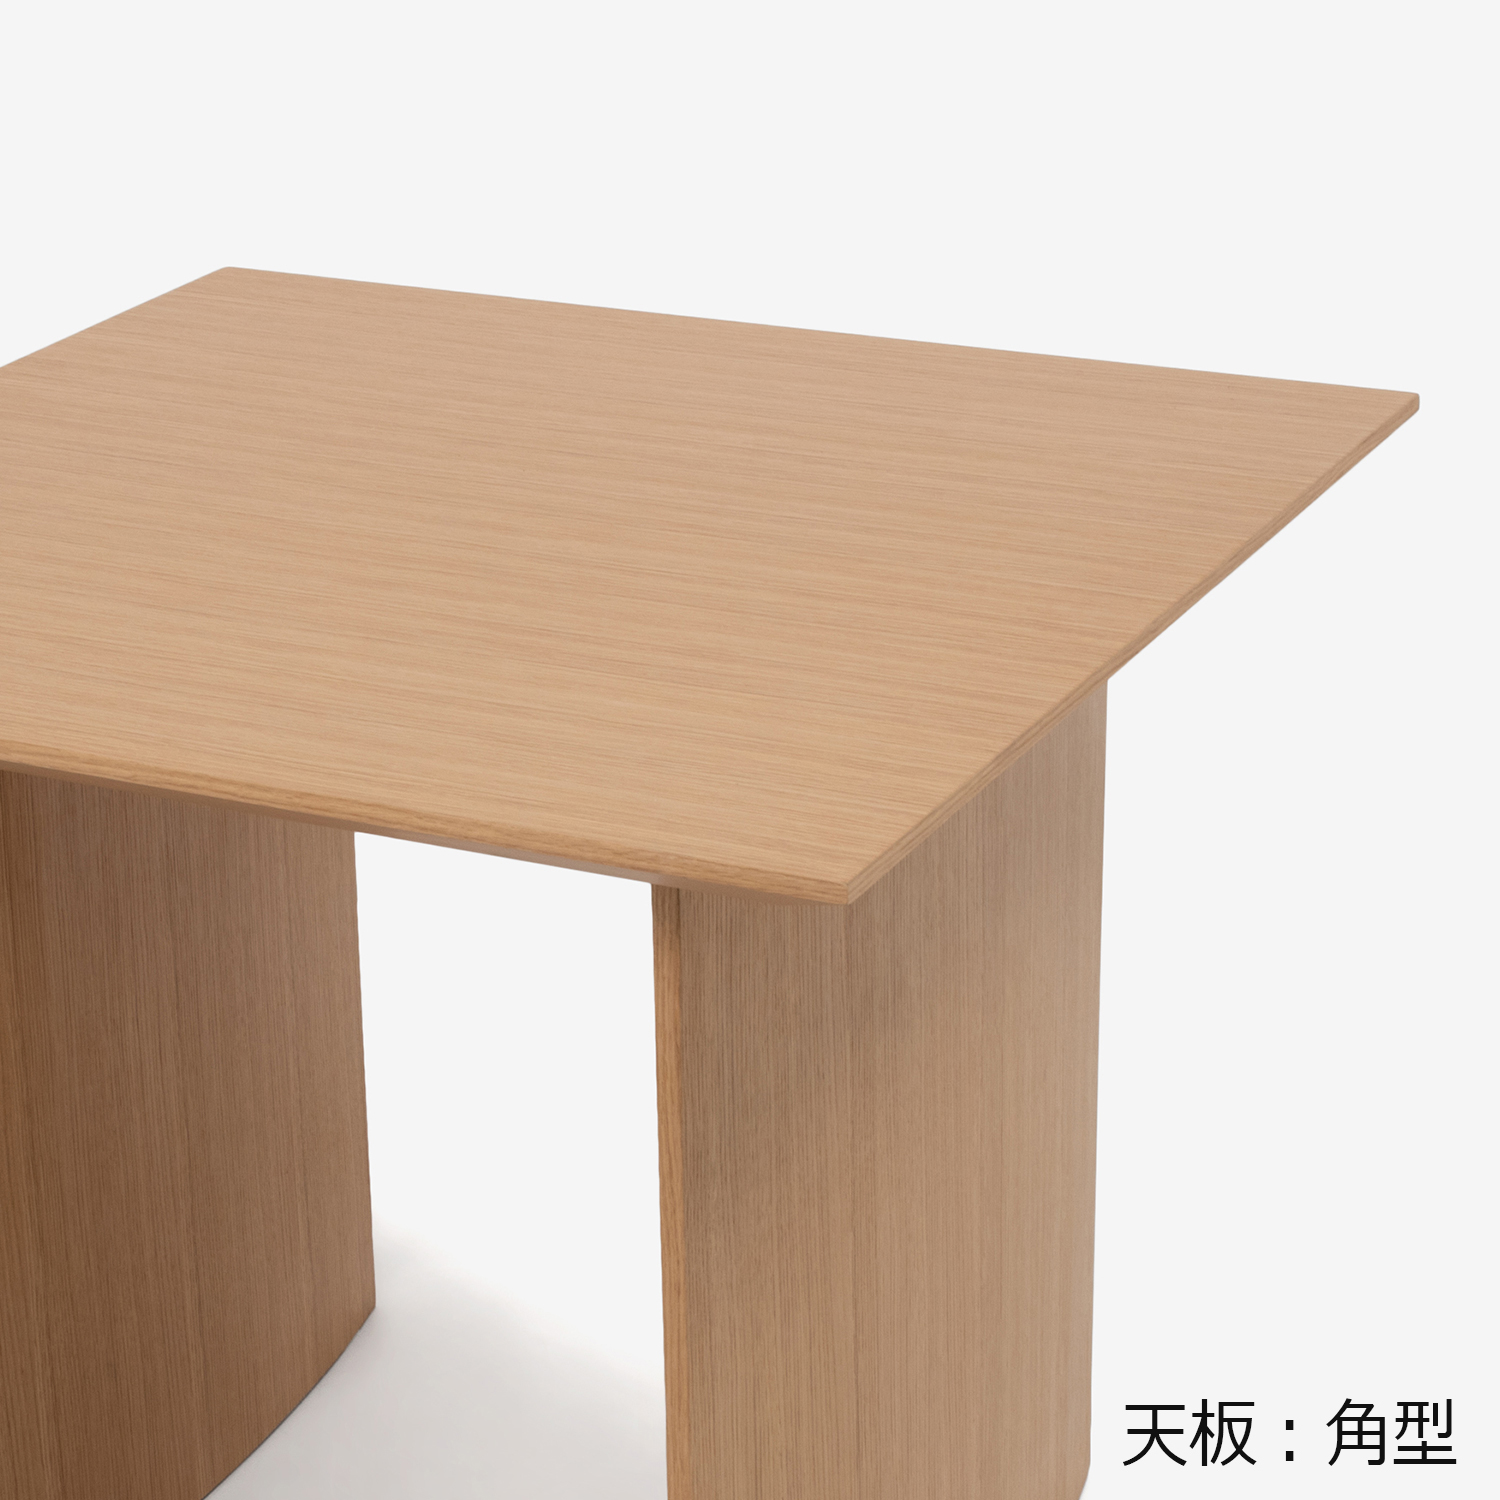 ダイニングテーブル「ジャスト」幅85cm オーク材ホワイトオーク色 パネル脚